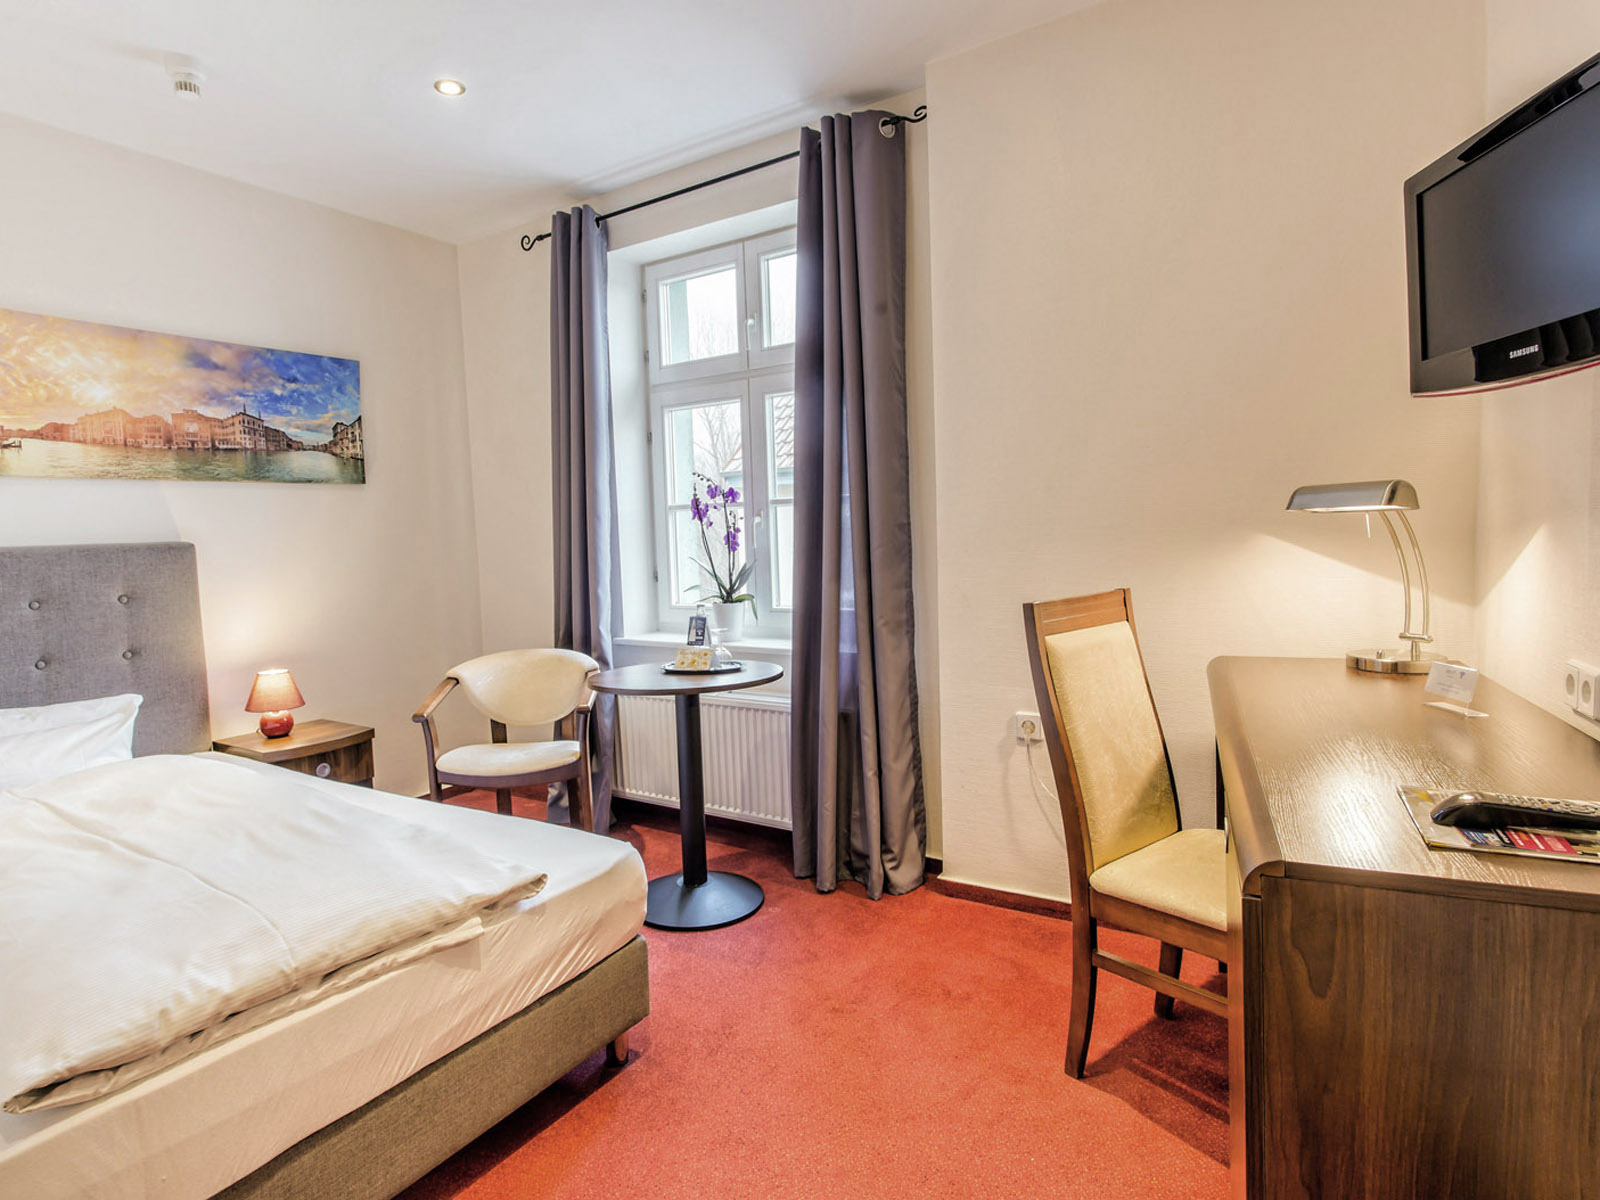 Komfort-Einzelzimmer im Hotel Zur Alten Oder in 15230 Frankfurt/Oder